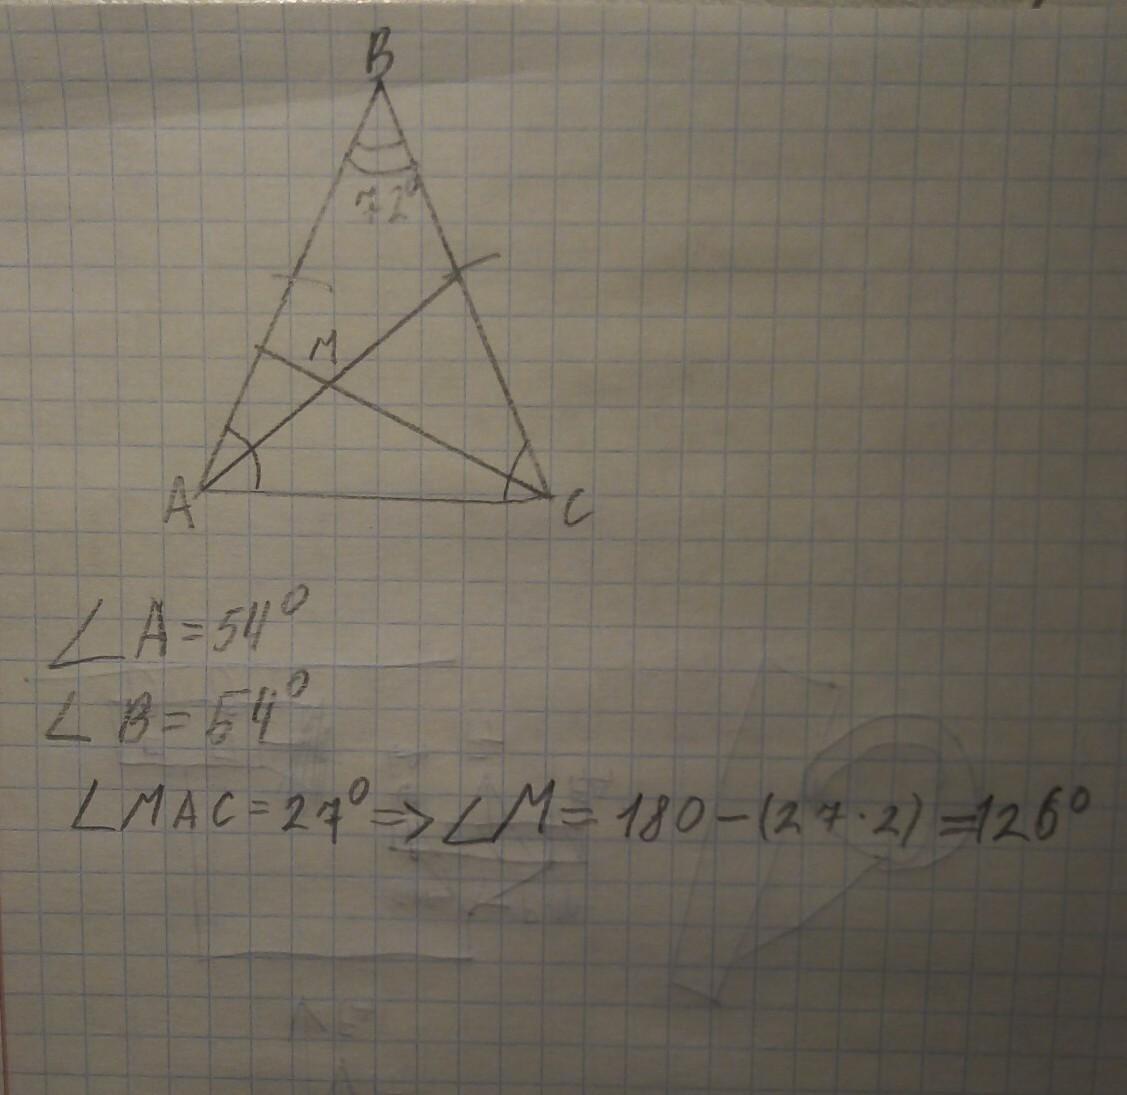 В треугольнике абс аб бц. Треугольник АБС. Биссектриса. В треугольнике АВС угол стороны АВ И вс равны. В равнобедренном треугольнике пересекаются биссектрисы углов.